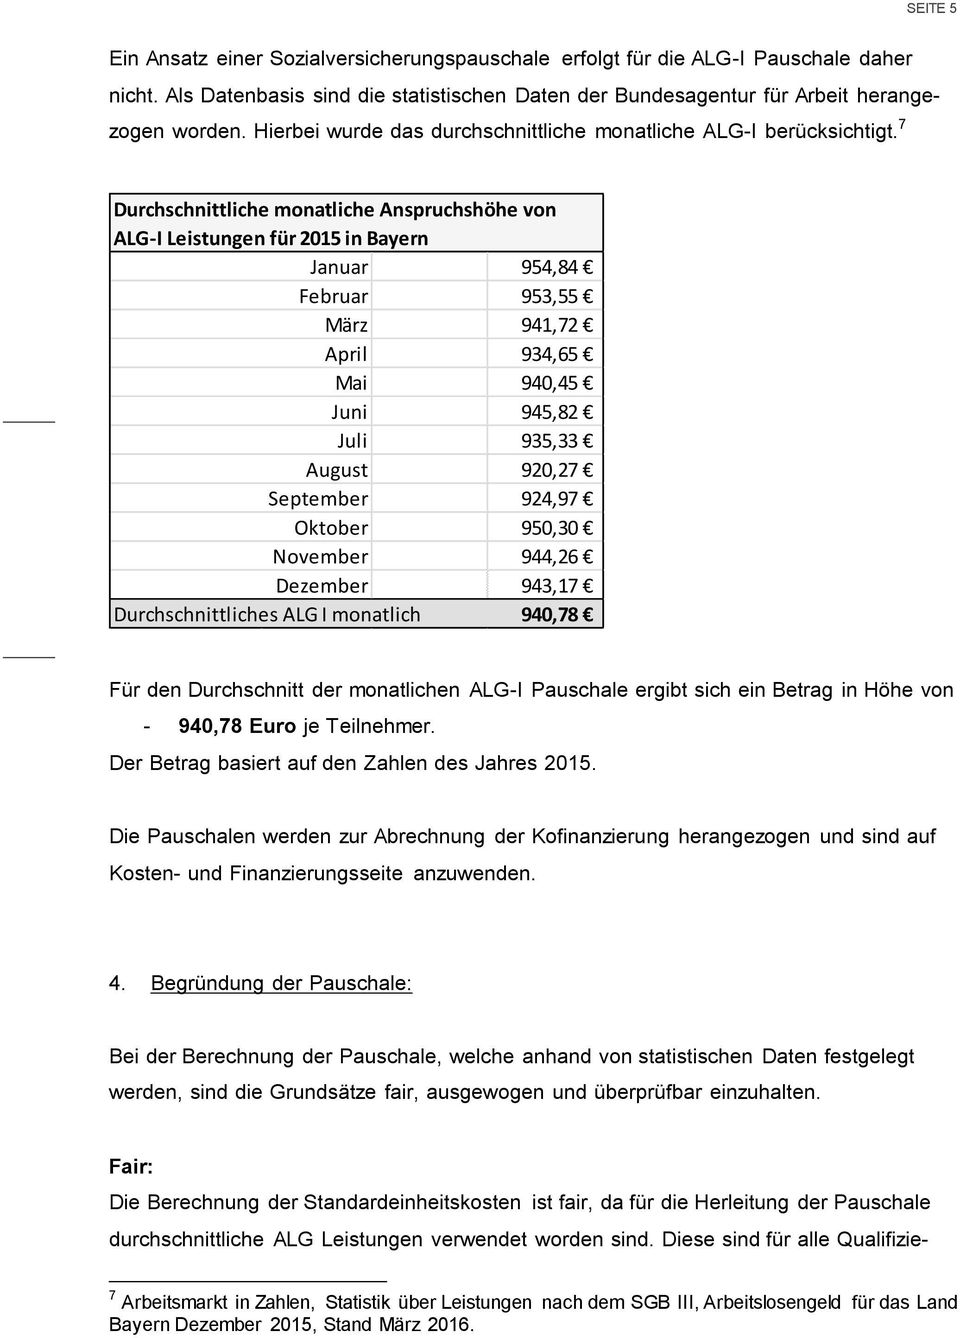 7 Durchschnittliche monatliche Anspruchshöhe von ALG-I Leistungen für 2015 in Bayern Januar 954,84 Februar 953,55 März 941,72 April 934,65 Mai 940,45 Juni 945,82 Juli 935,33 August 920,27 September